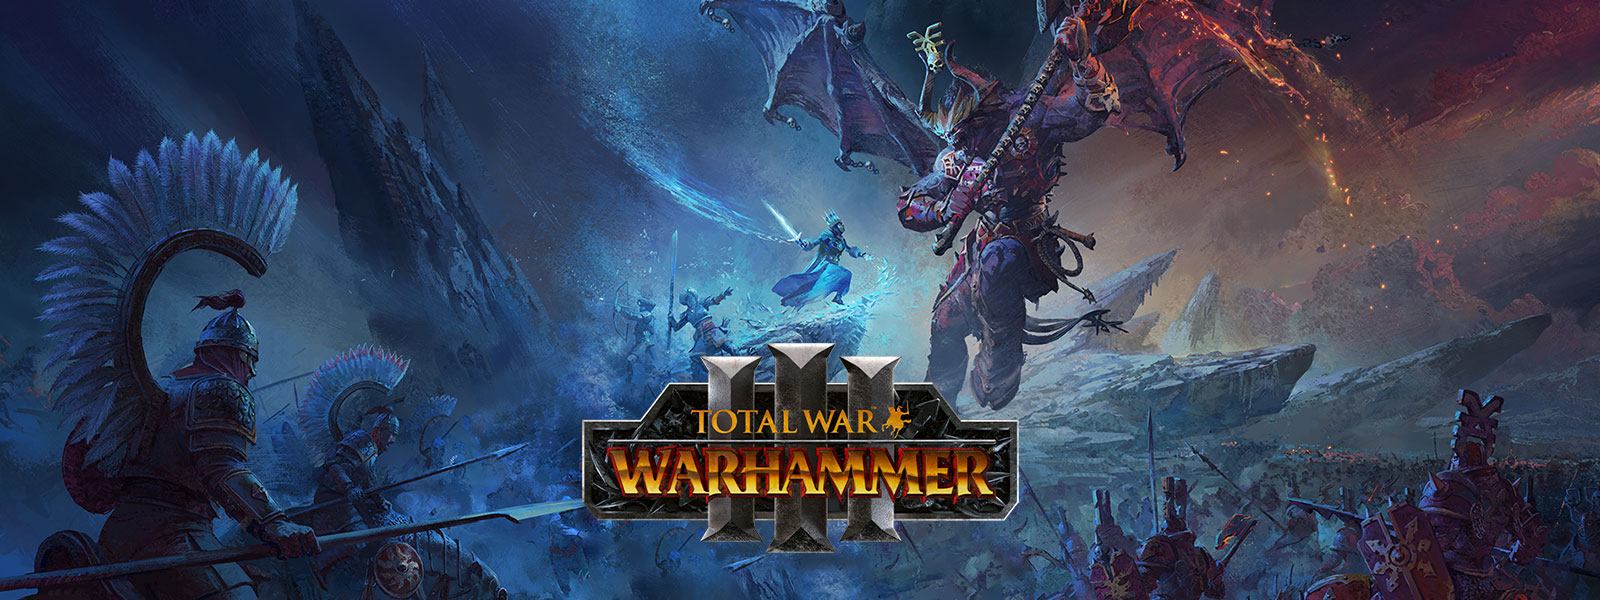 Total War Warhammer 3, Ein Eiszauberer tritt gegen einen riesigen Drachendämon über einem Schlachtfeld an.